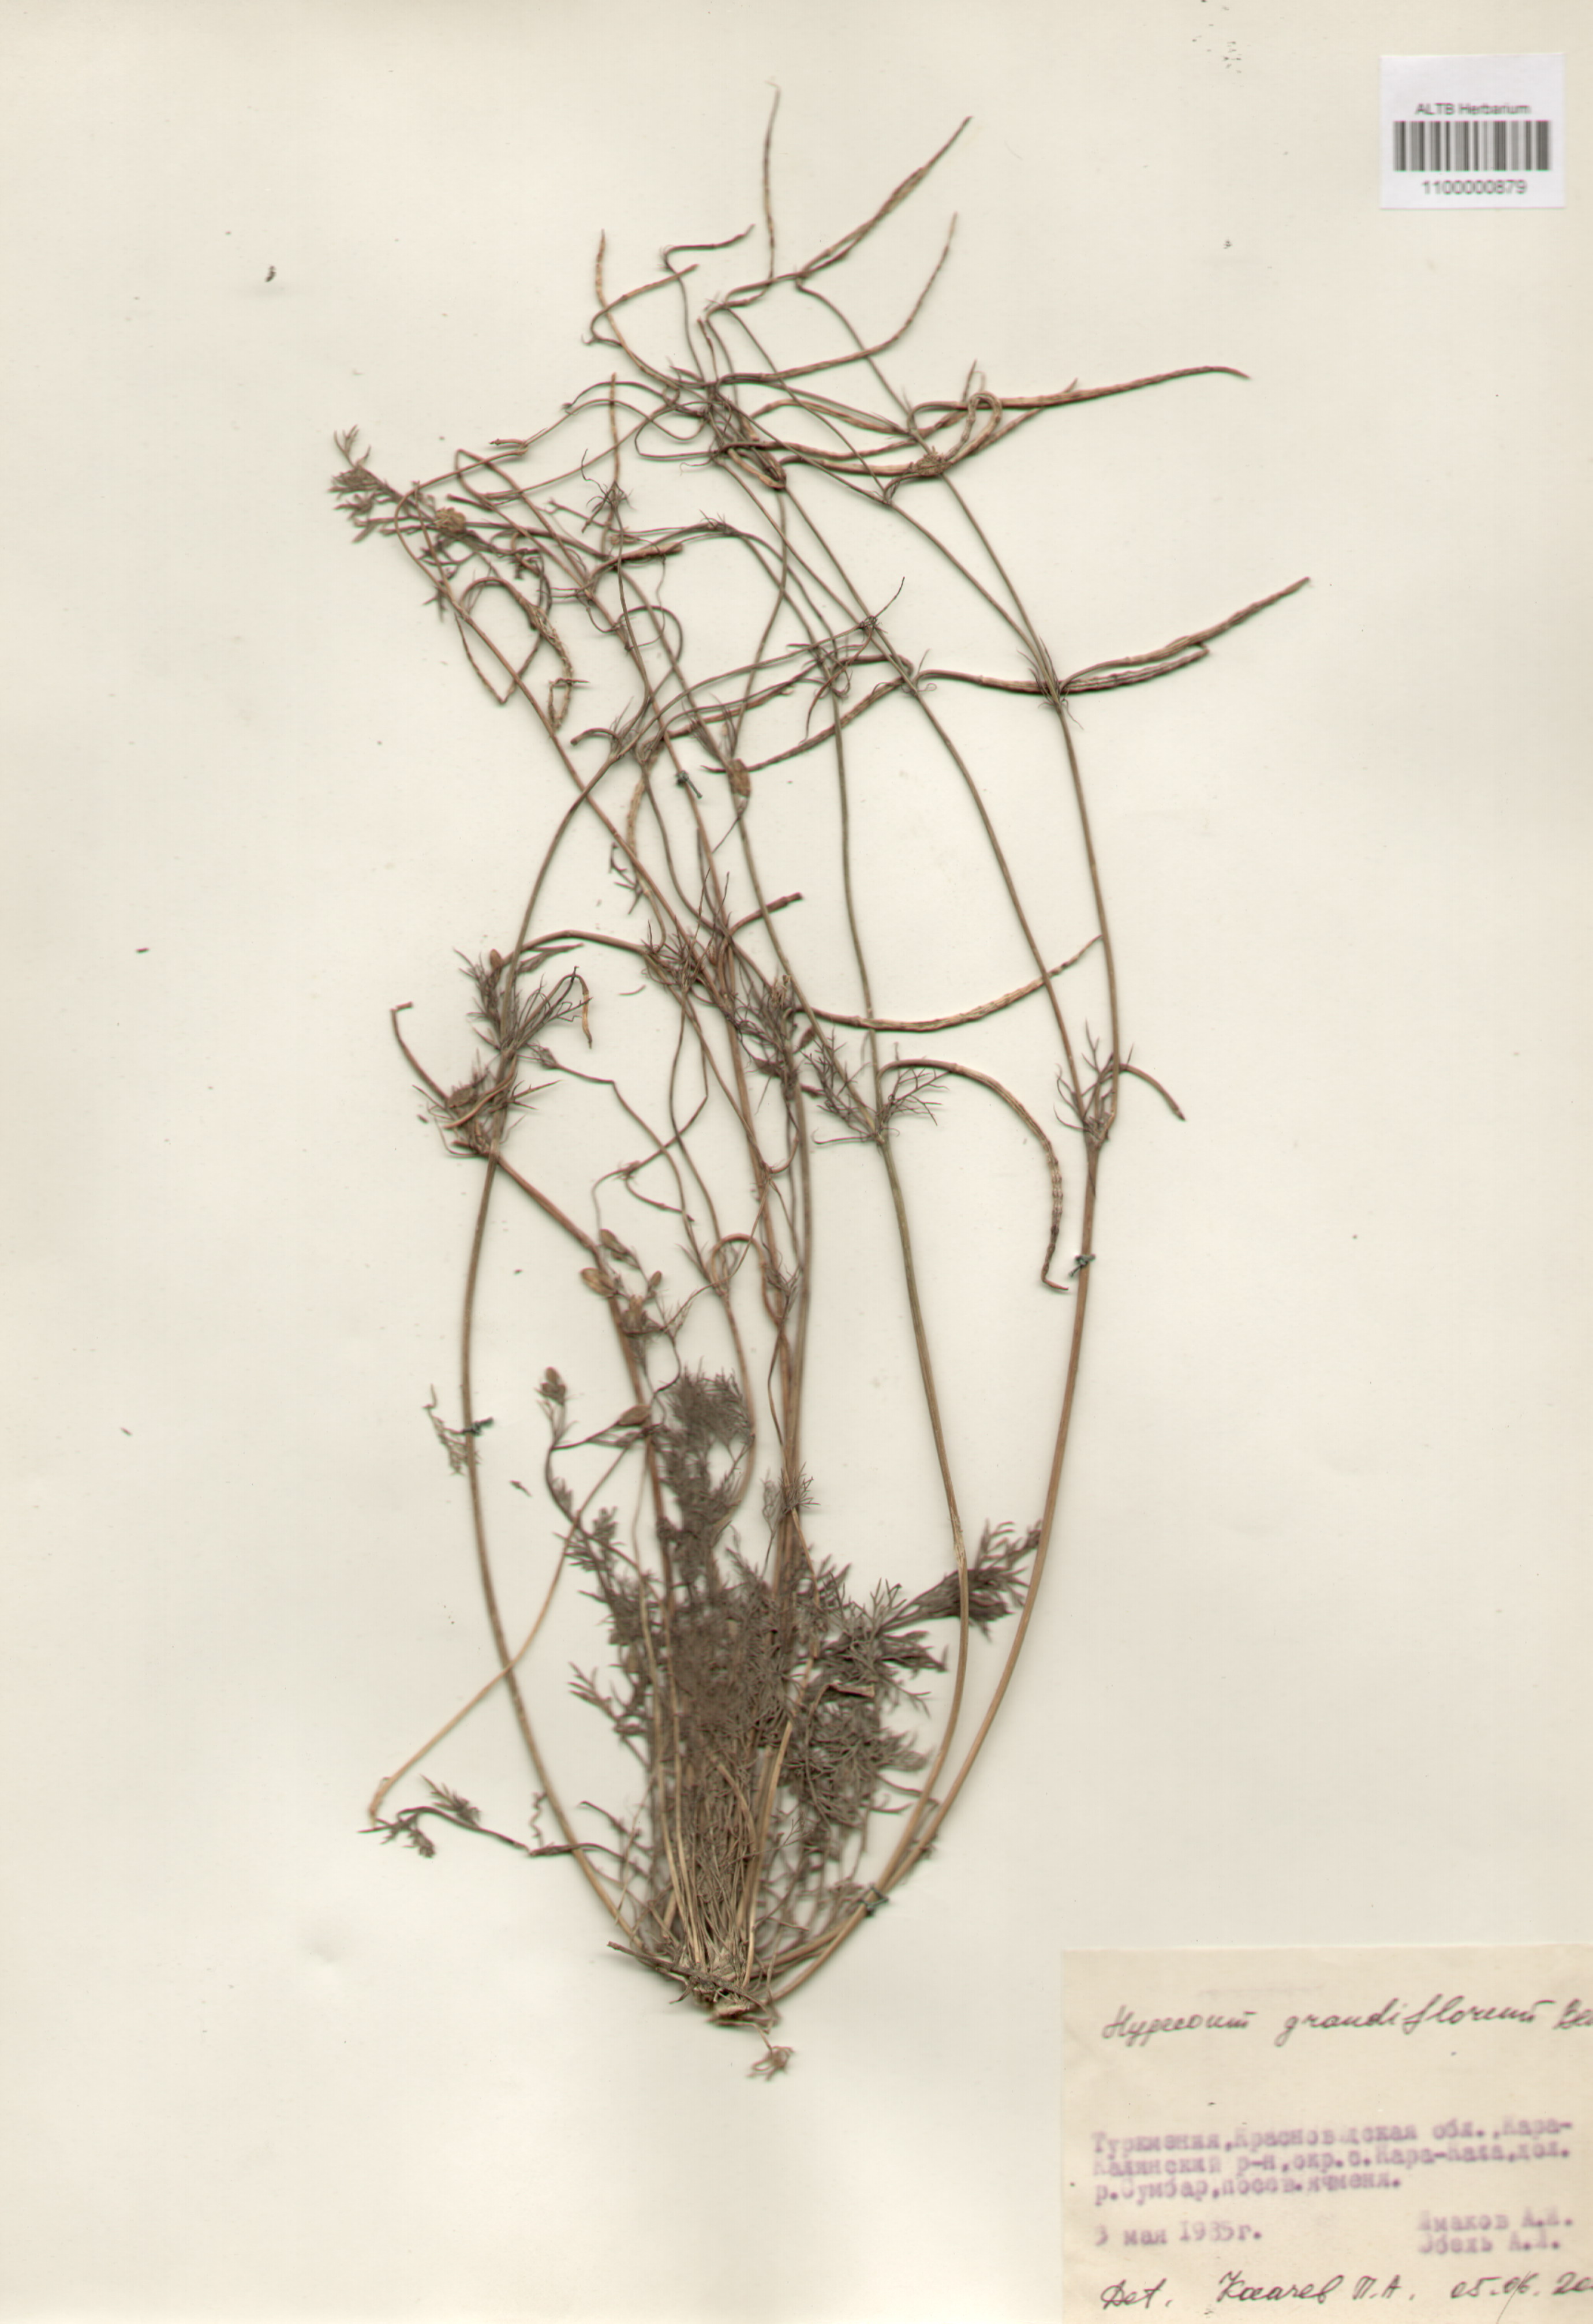 Hypocoaceae,Hypocoum grandiflorum Benth.